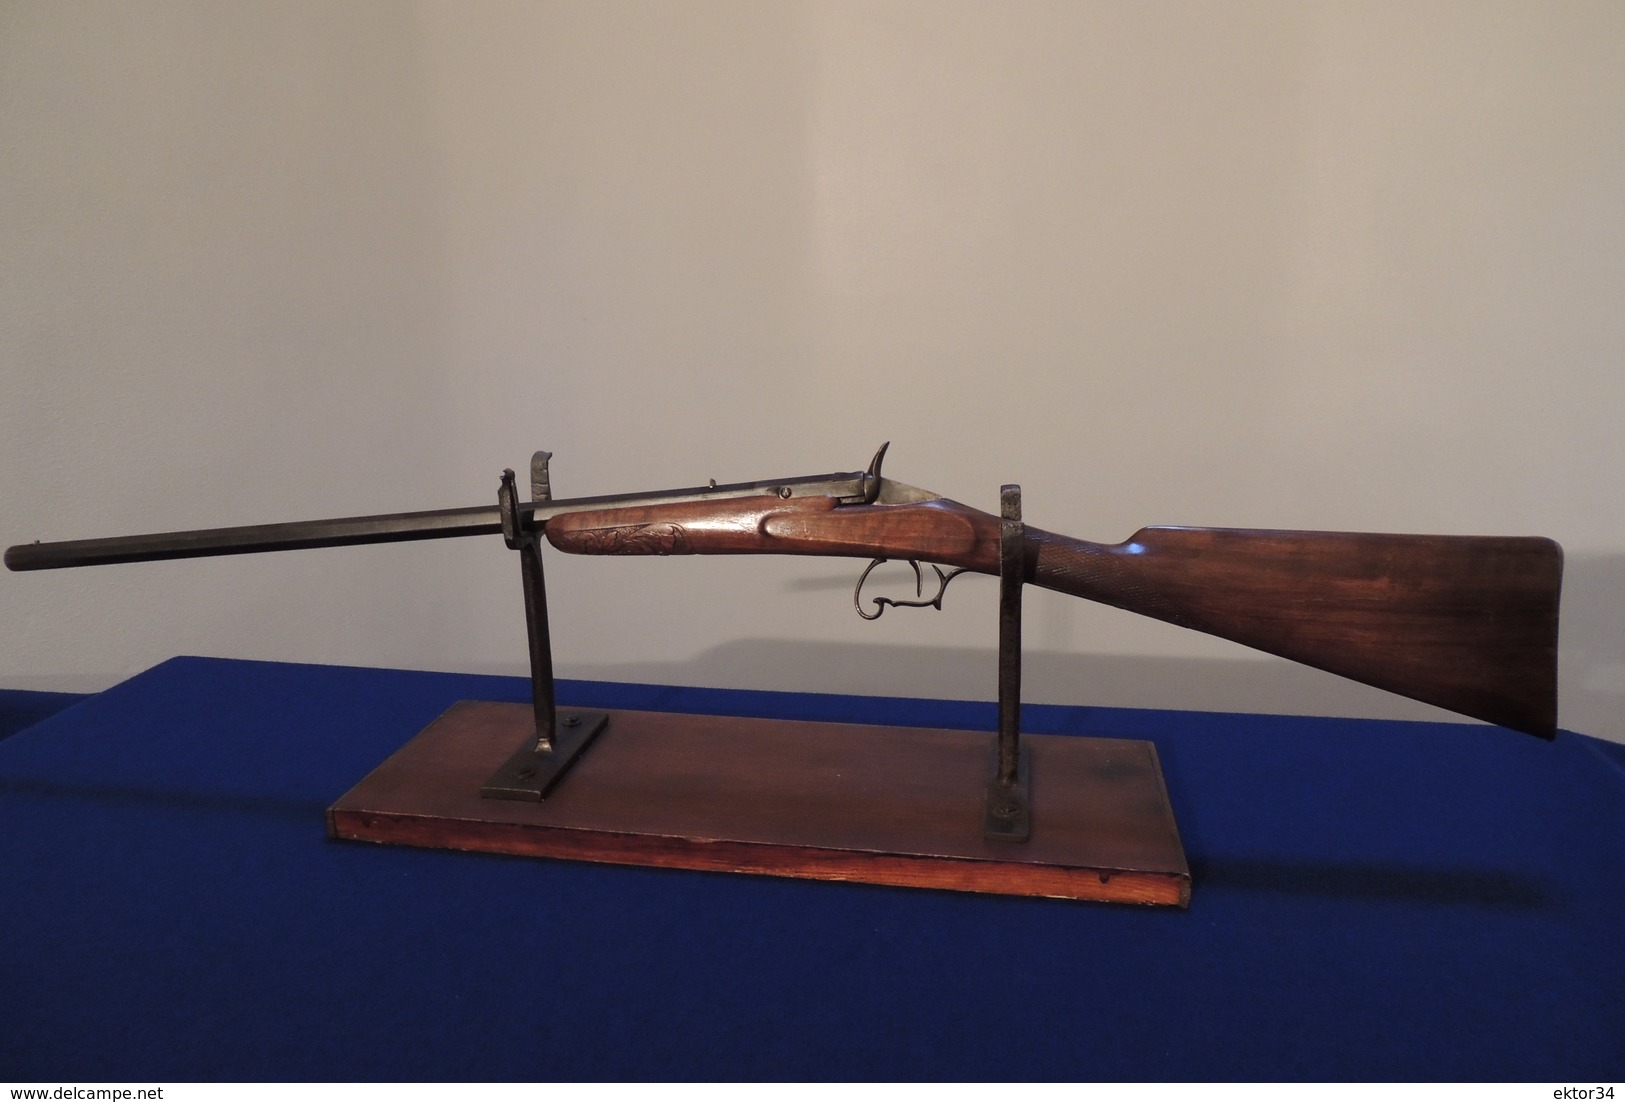 Très Belle Carabine De Jardin De La Marque "WARNANT" En Calibre 9 Mm, Un Coup. CATEGORIE D - Armas De Colección